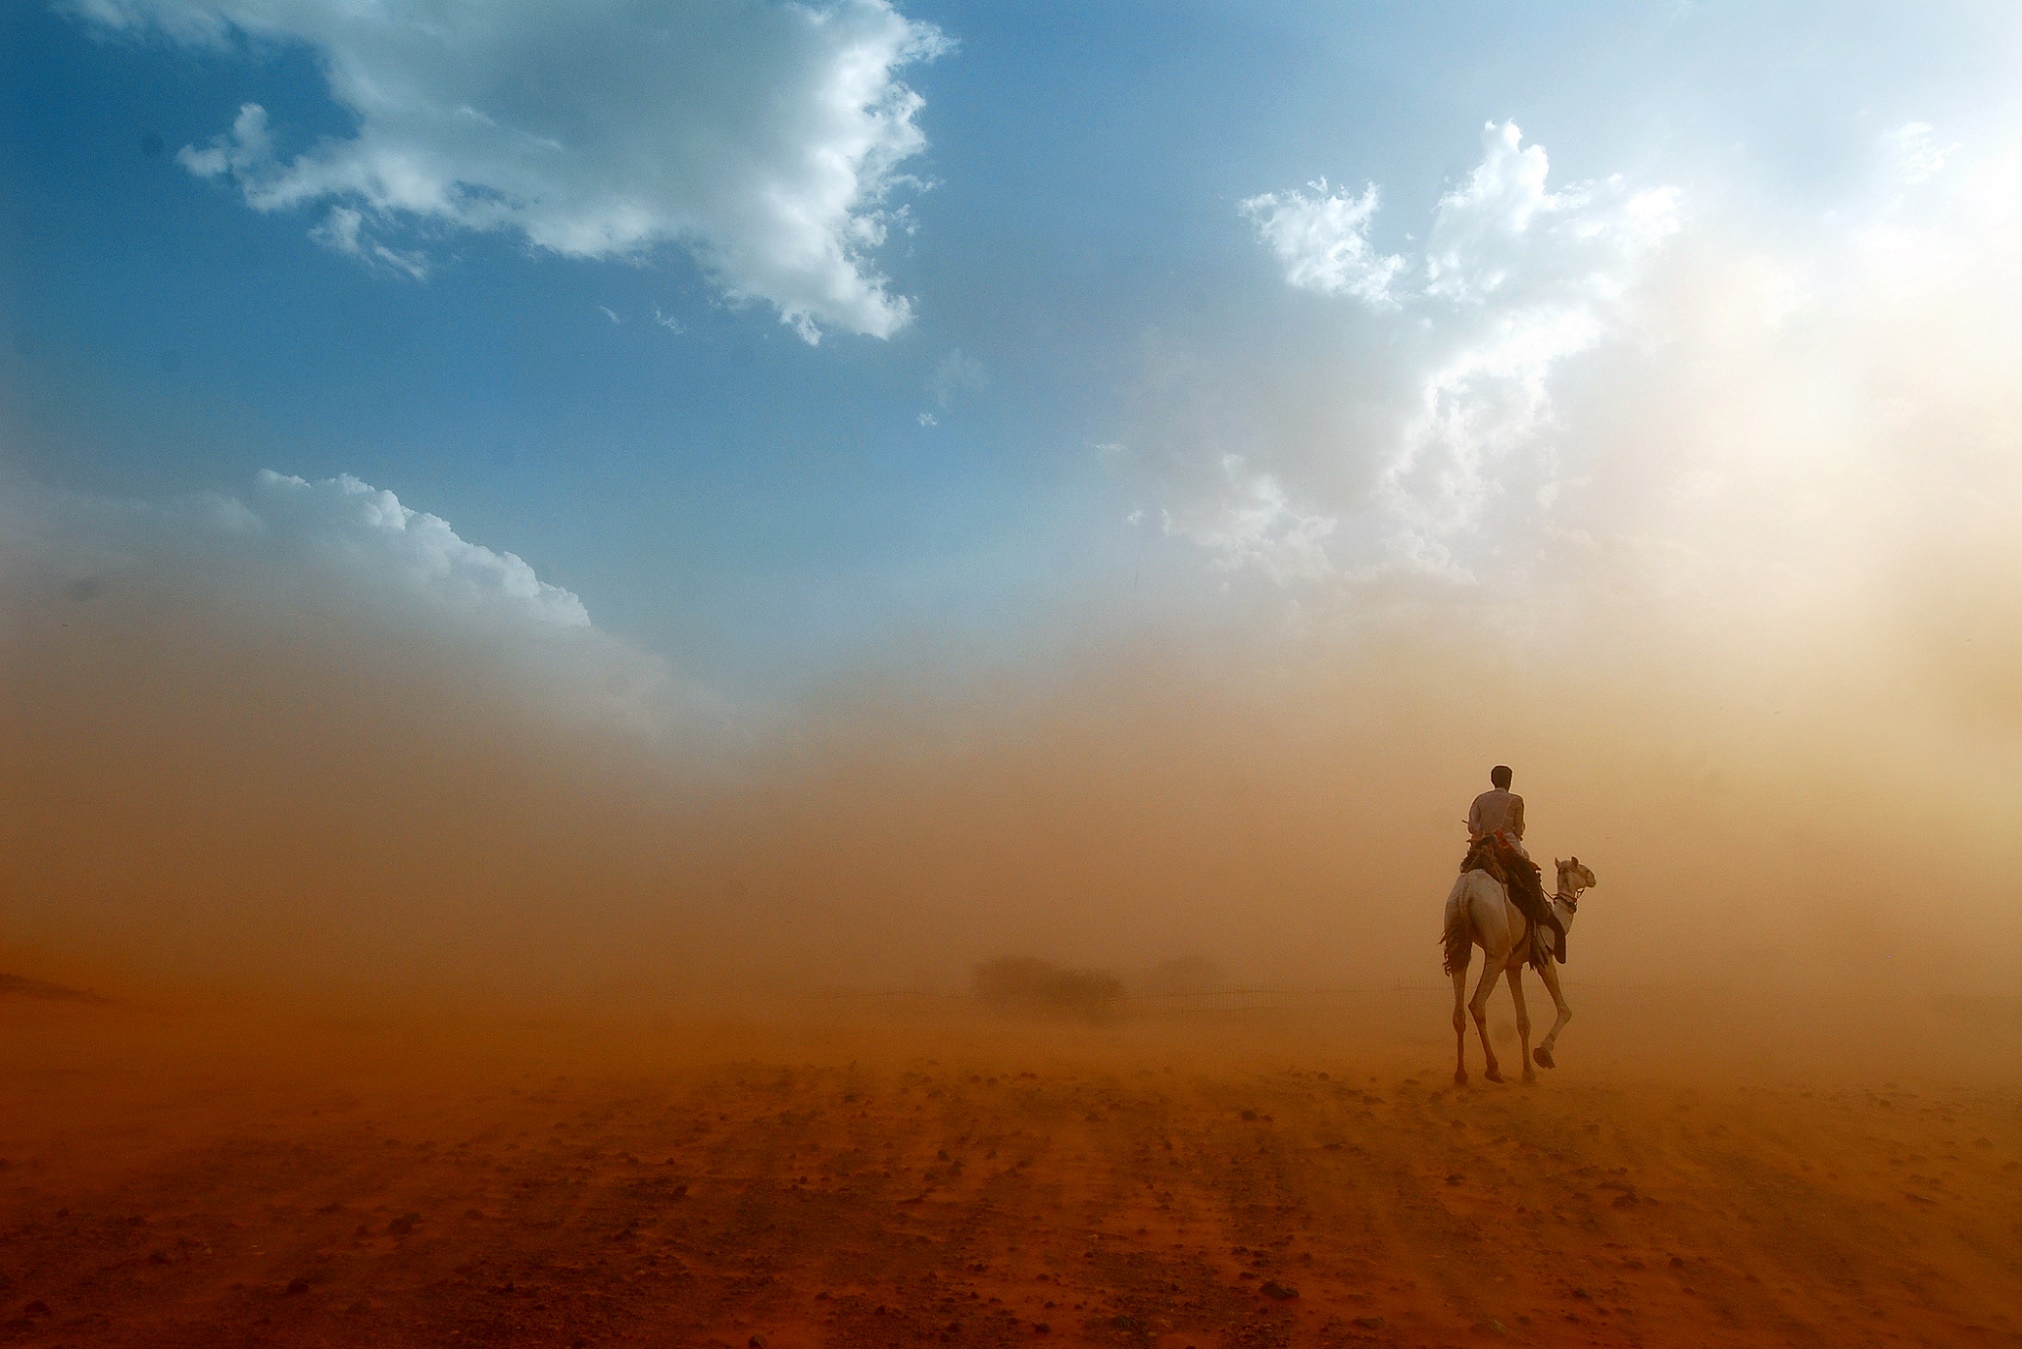 En soufflant violemment, l’harmattan soulève des poussières. © onairda, Shutterstock